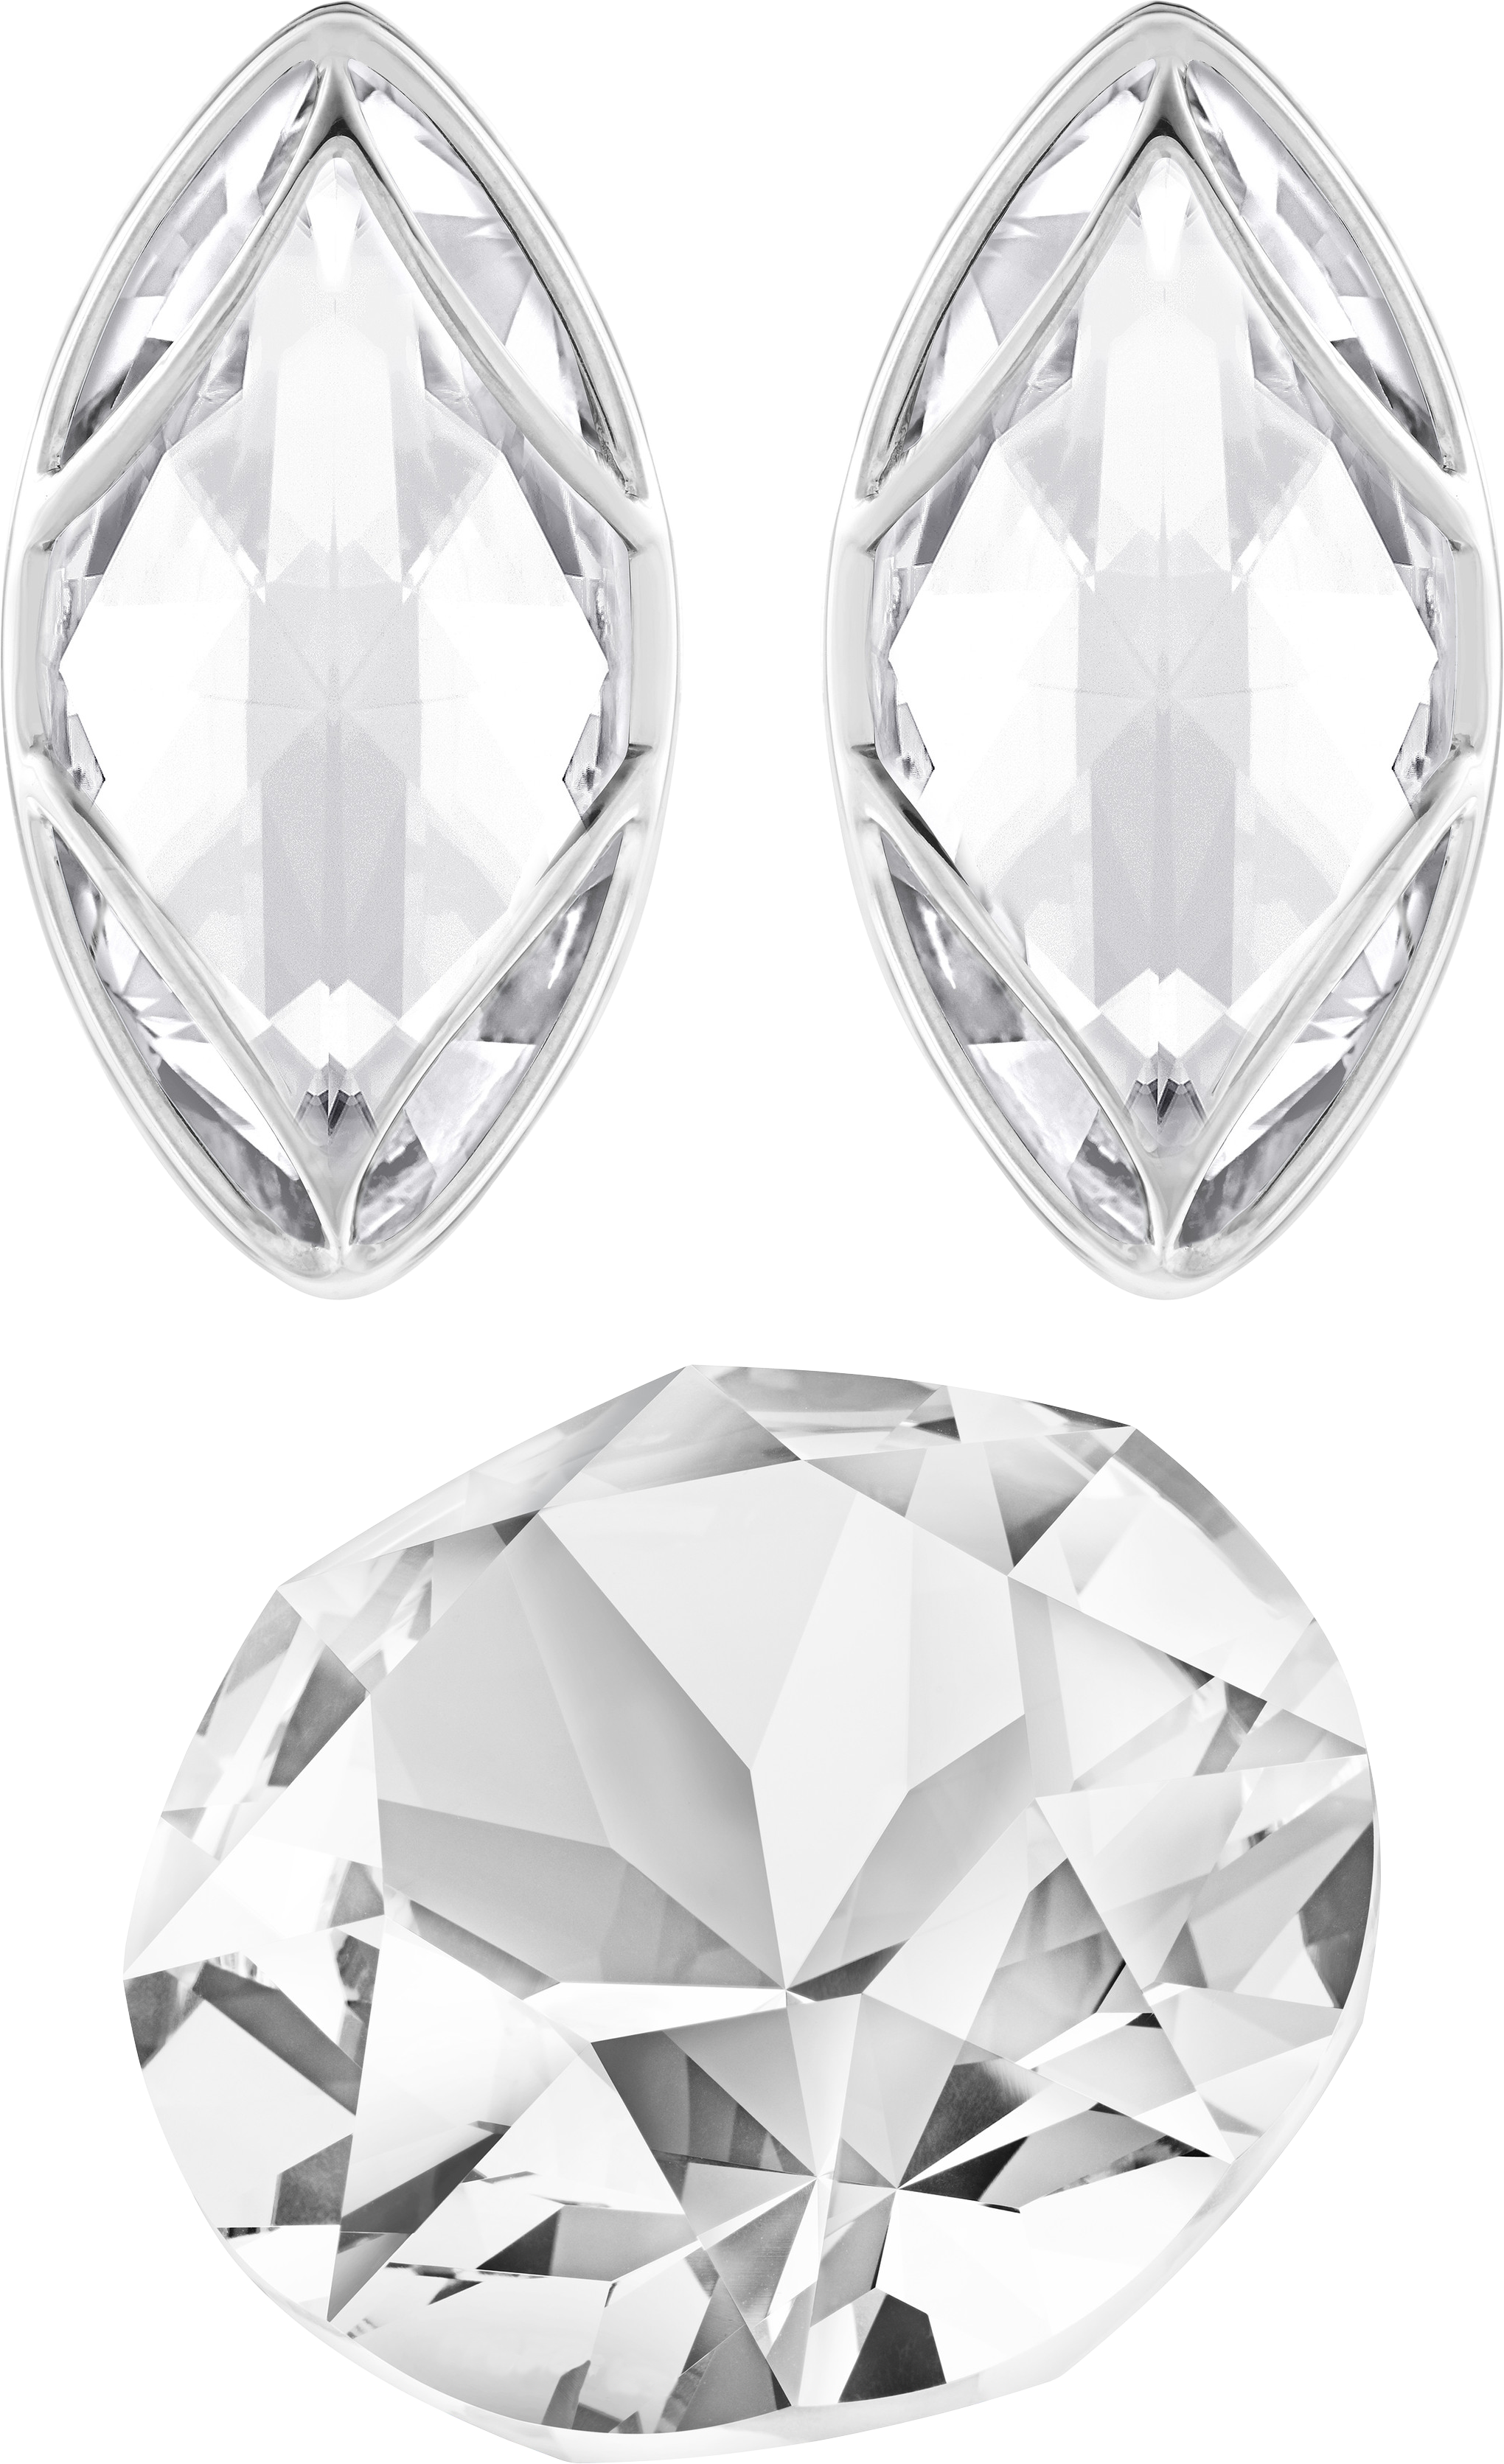 세 개의 다이아몬드